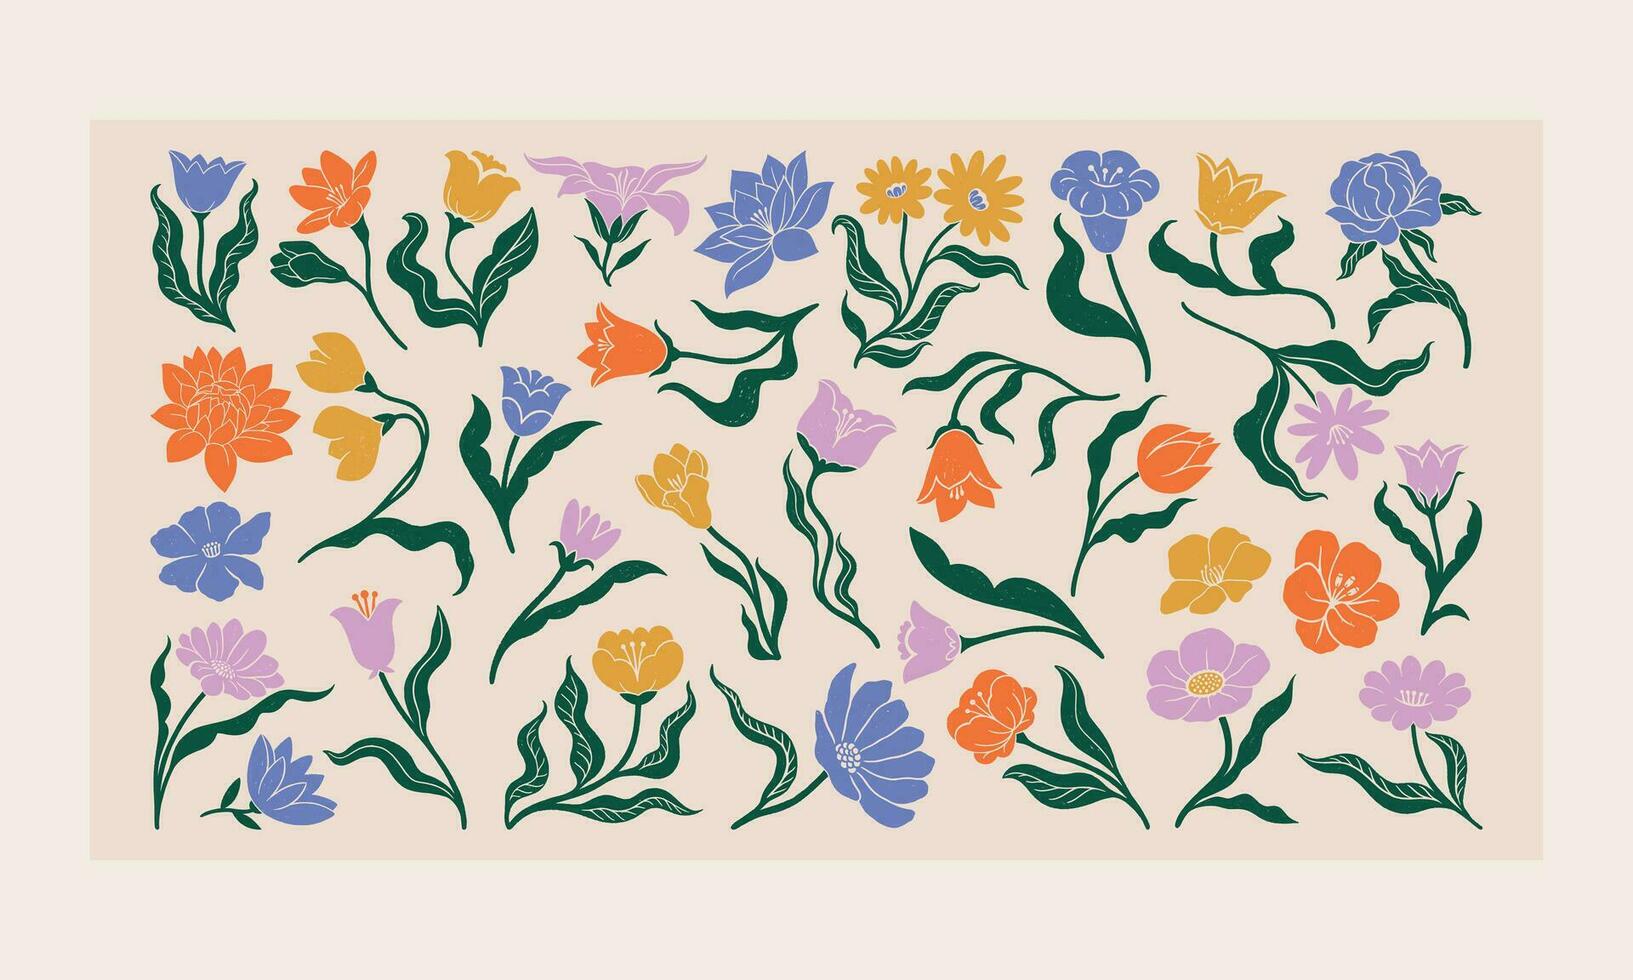 Hand gezeichnet Linoleum Schnitt Blume Sammlung. botanisch Blumen- Satz. modern abstrakt texturiert Blumen. natürlich organisch Jahrgang Stil Elemente. vektor